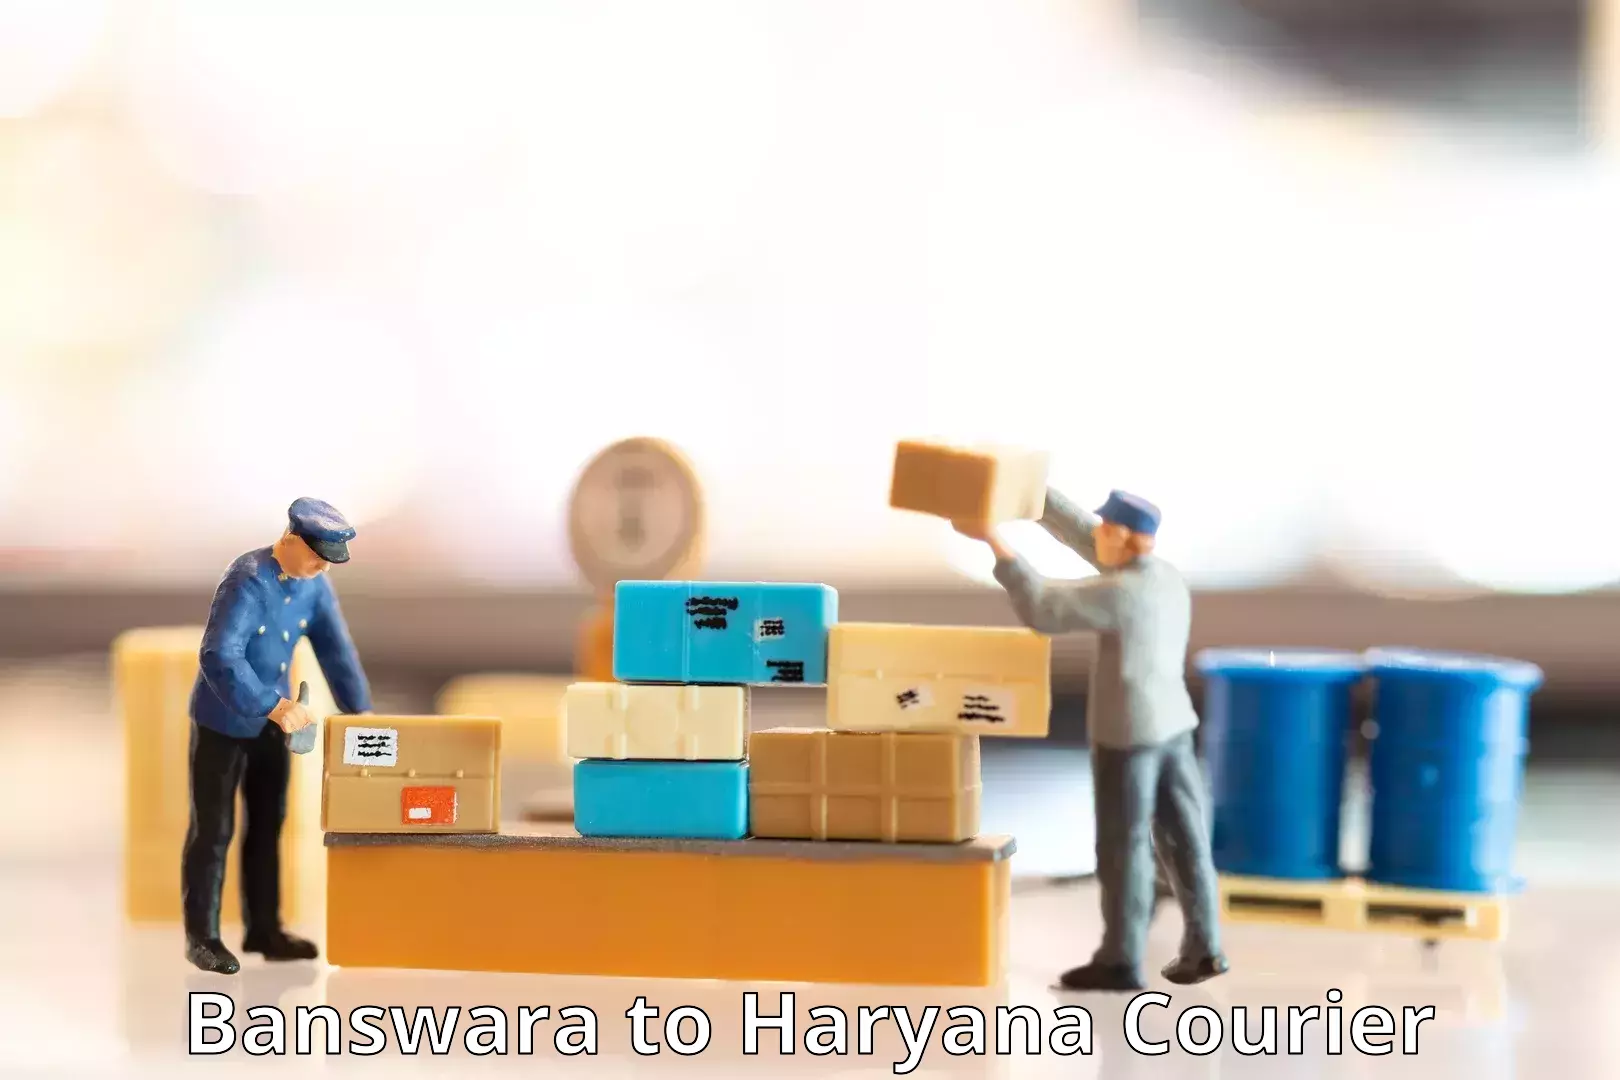 Professional parcel services Banswara to Chaudhary Charan Singh Haryana Agricultural University Hisar